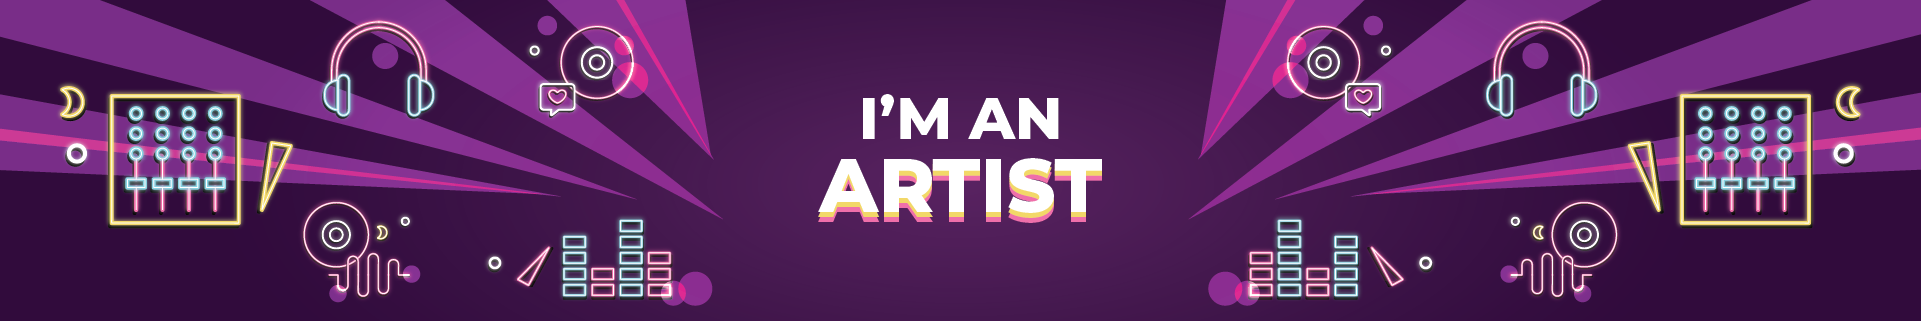 musiceroo-im-an-artist-banner